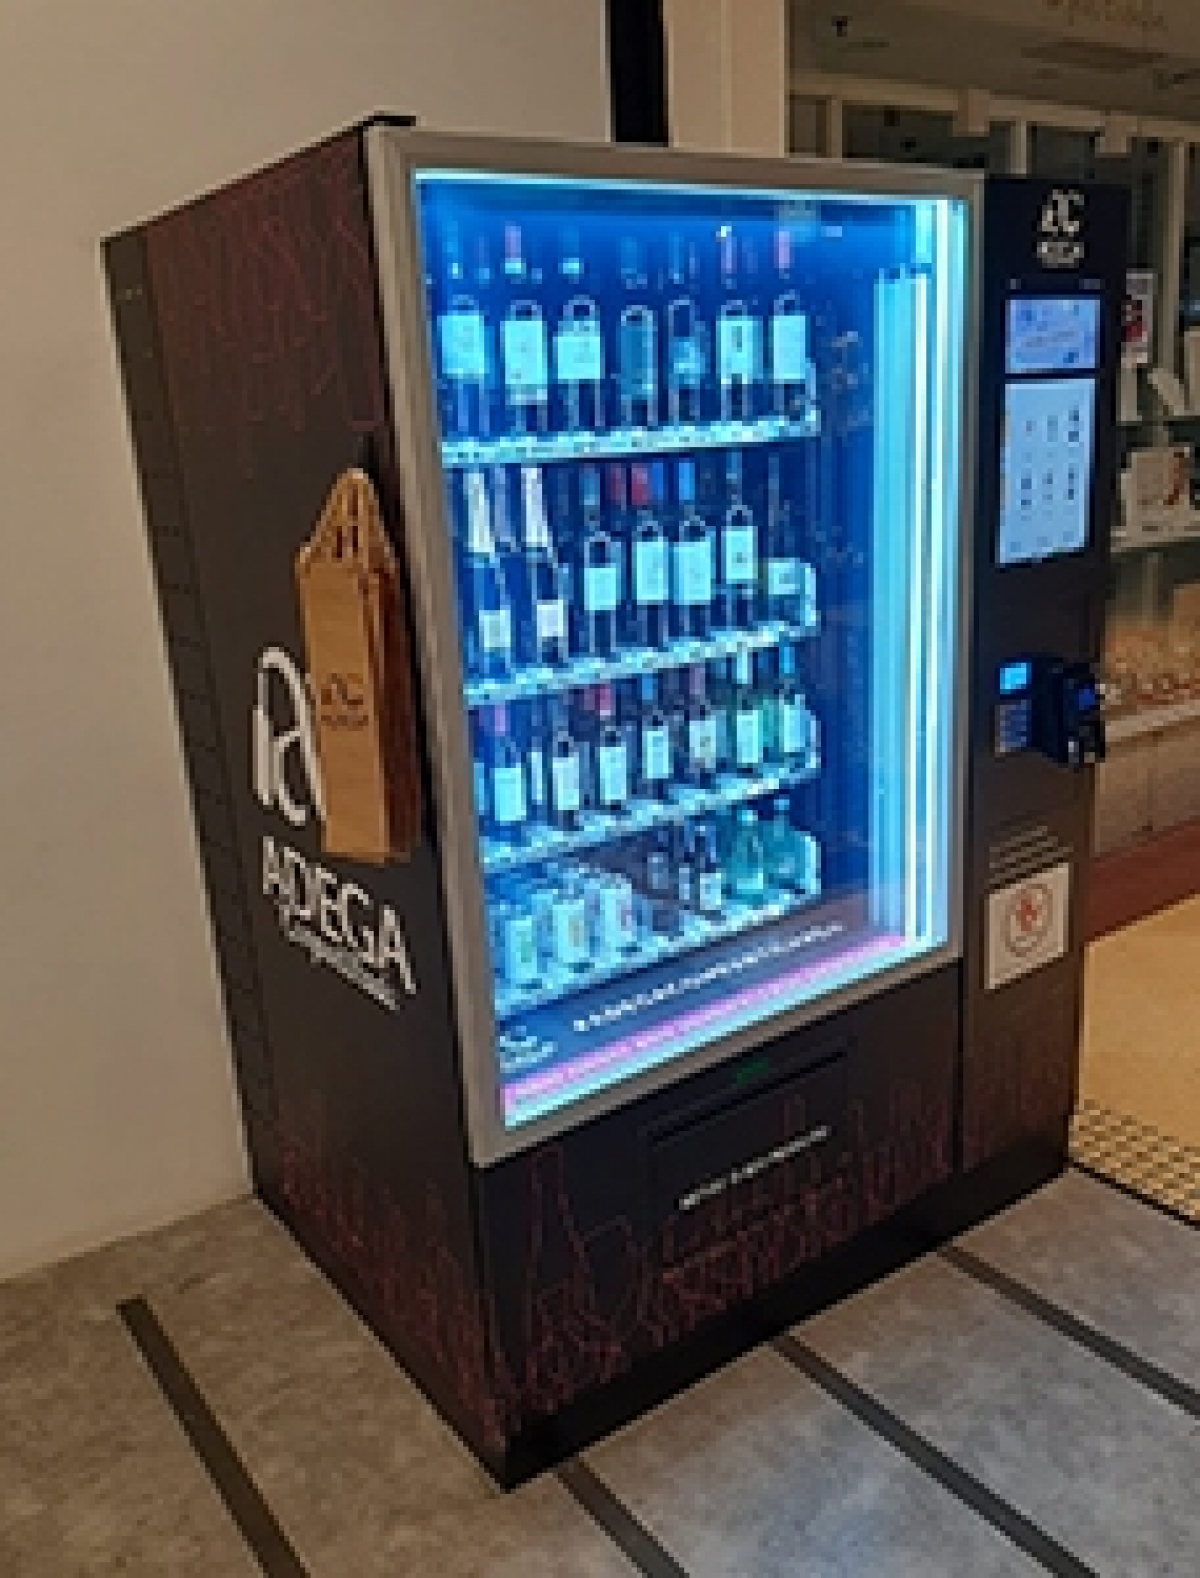 Franquia de Venda Autônomas de Produtos por Vending Machines